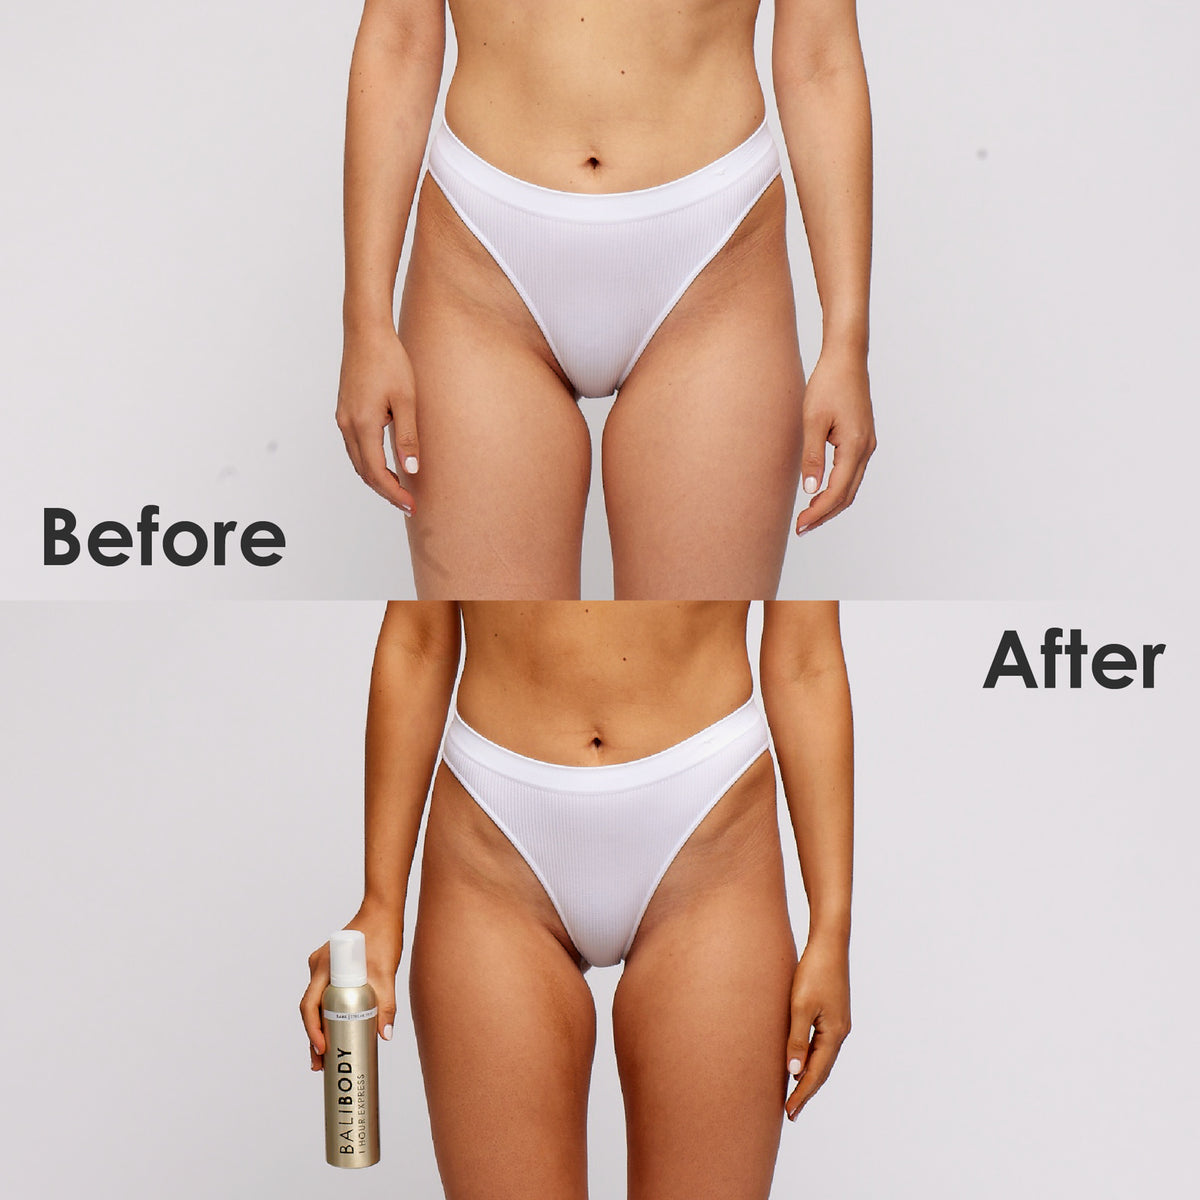 Vorher/Nachher Vergleich von Bali Body 1 Hour Express Tan auf Armen, Bauch, Oberschenkeln